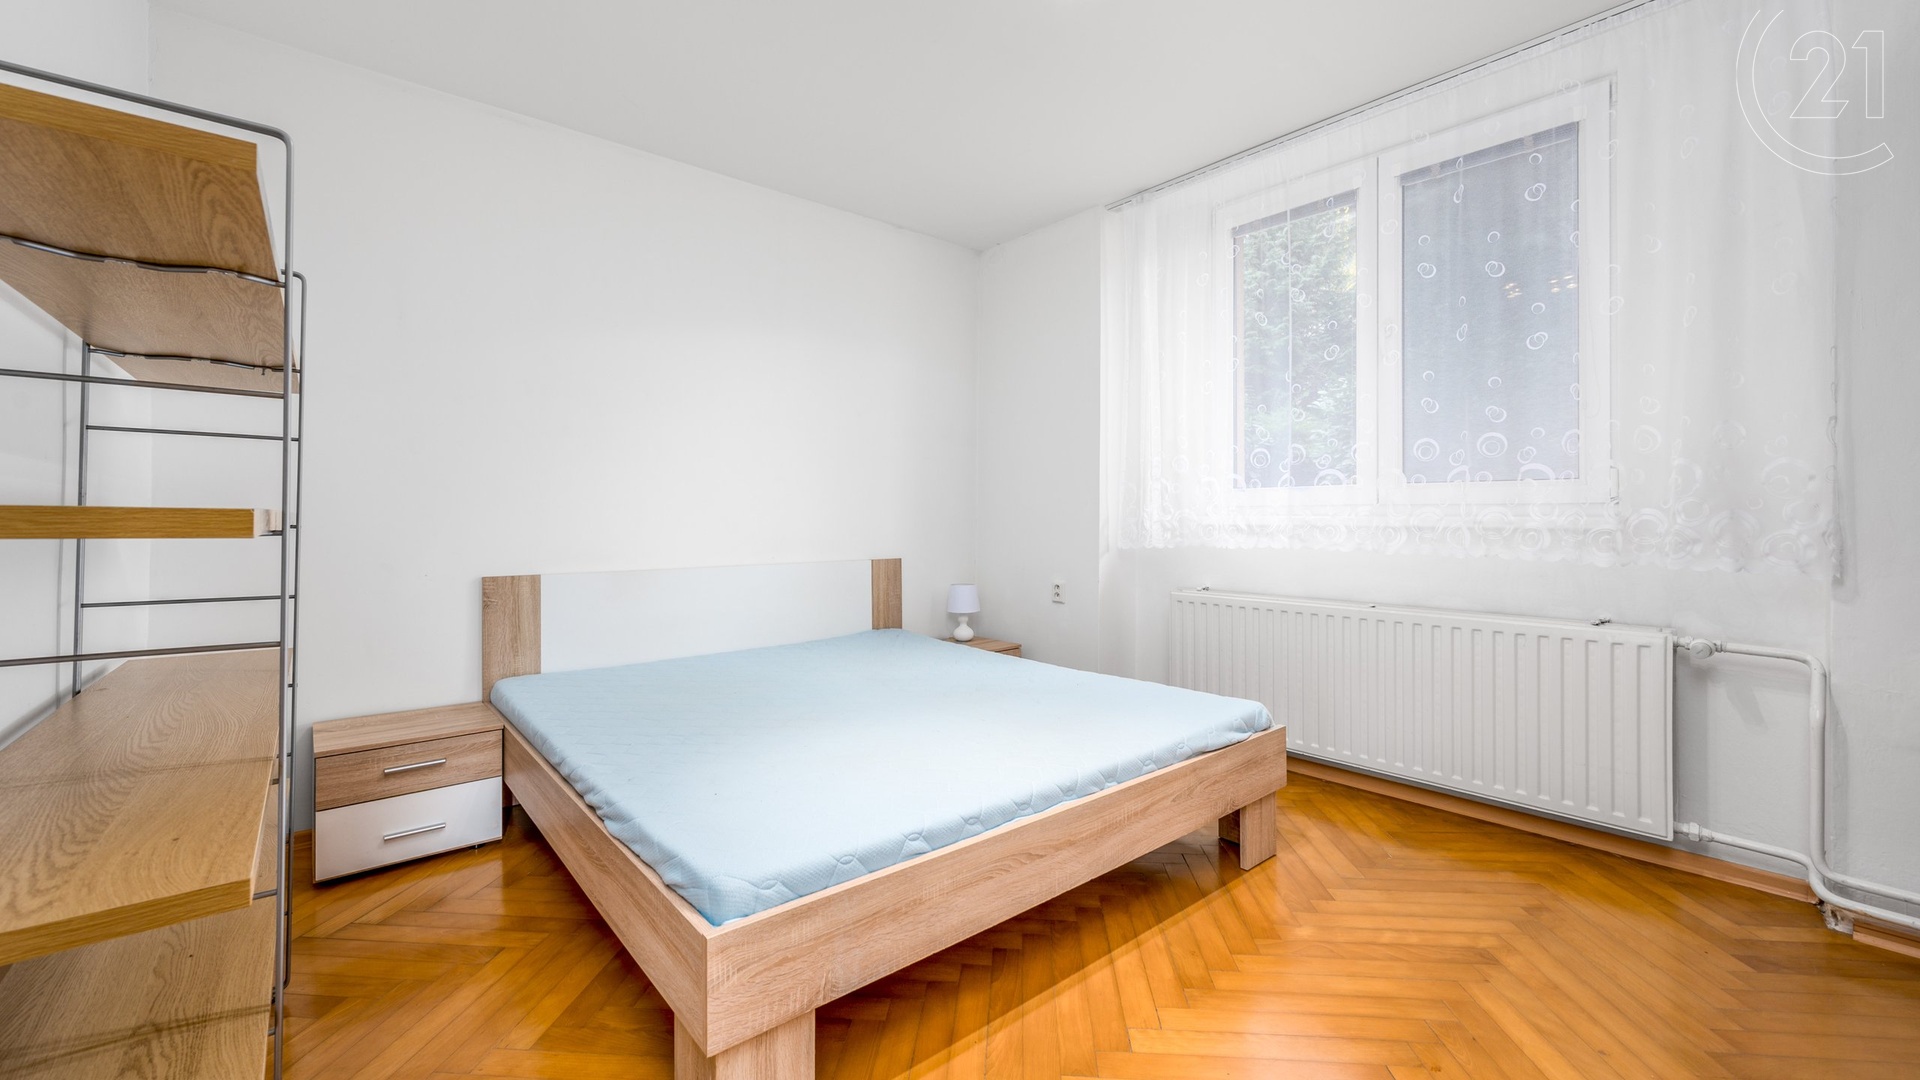 Pronájem bytu 2+1, 55 m², OV, Praha 9- Hloubětín, ulice Hostavická